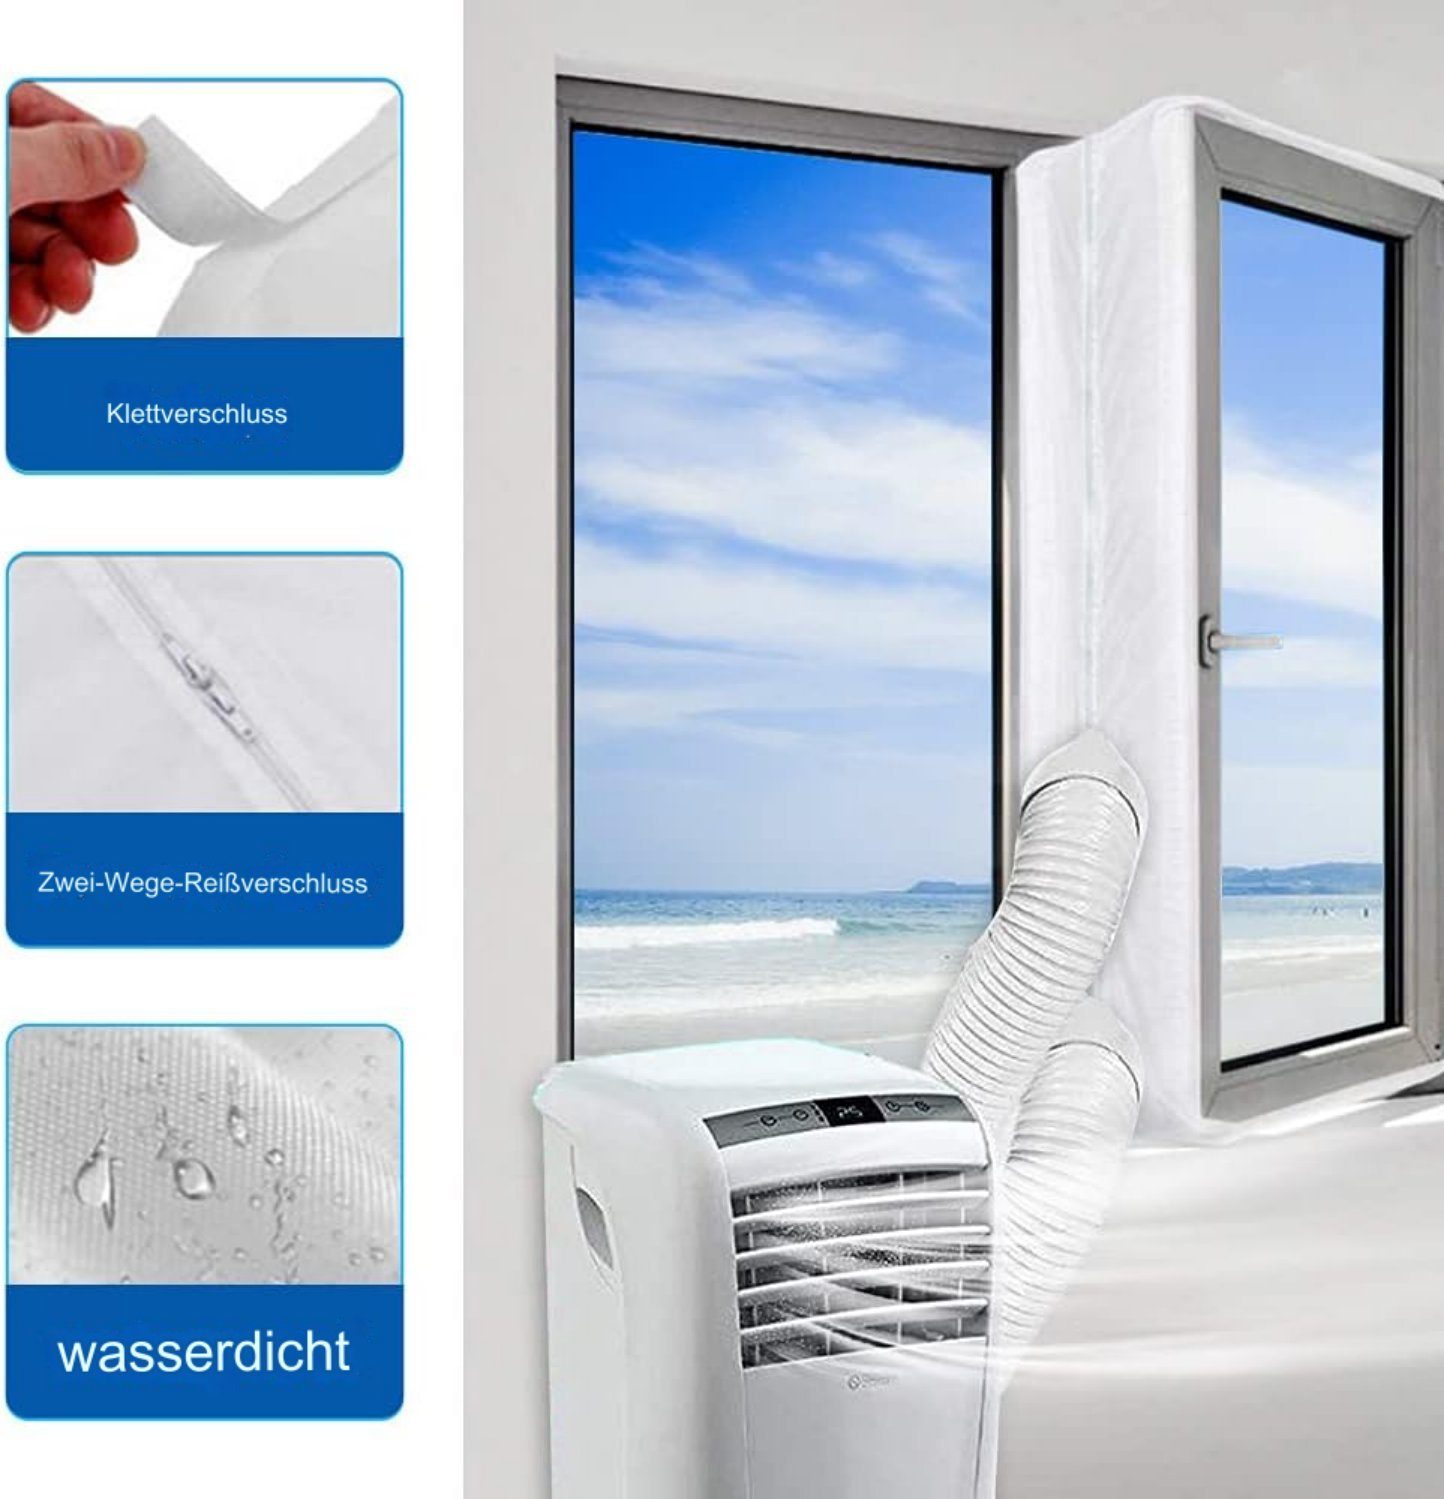 jalleria Zu- und Ablauf-Schlauchverlängerung Mobiles Dichtungsset für Klimaanlagen, Türfenster, 300 cm.